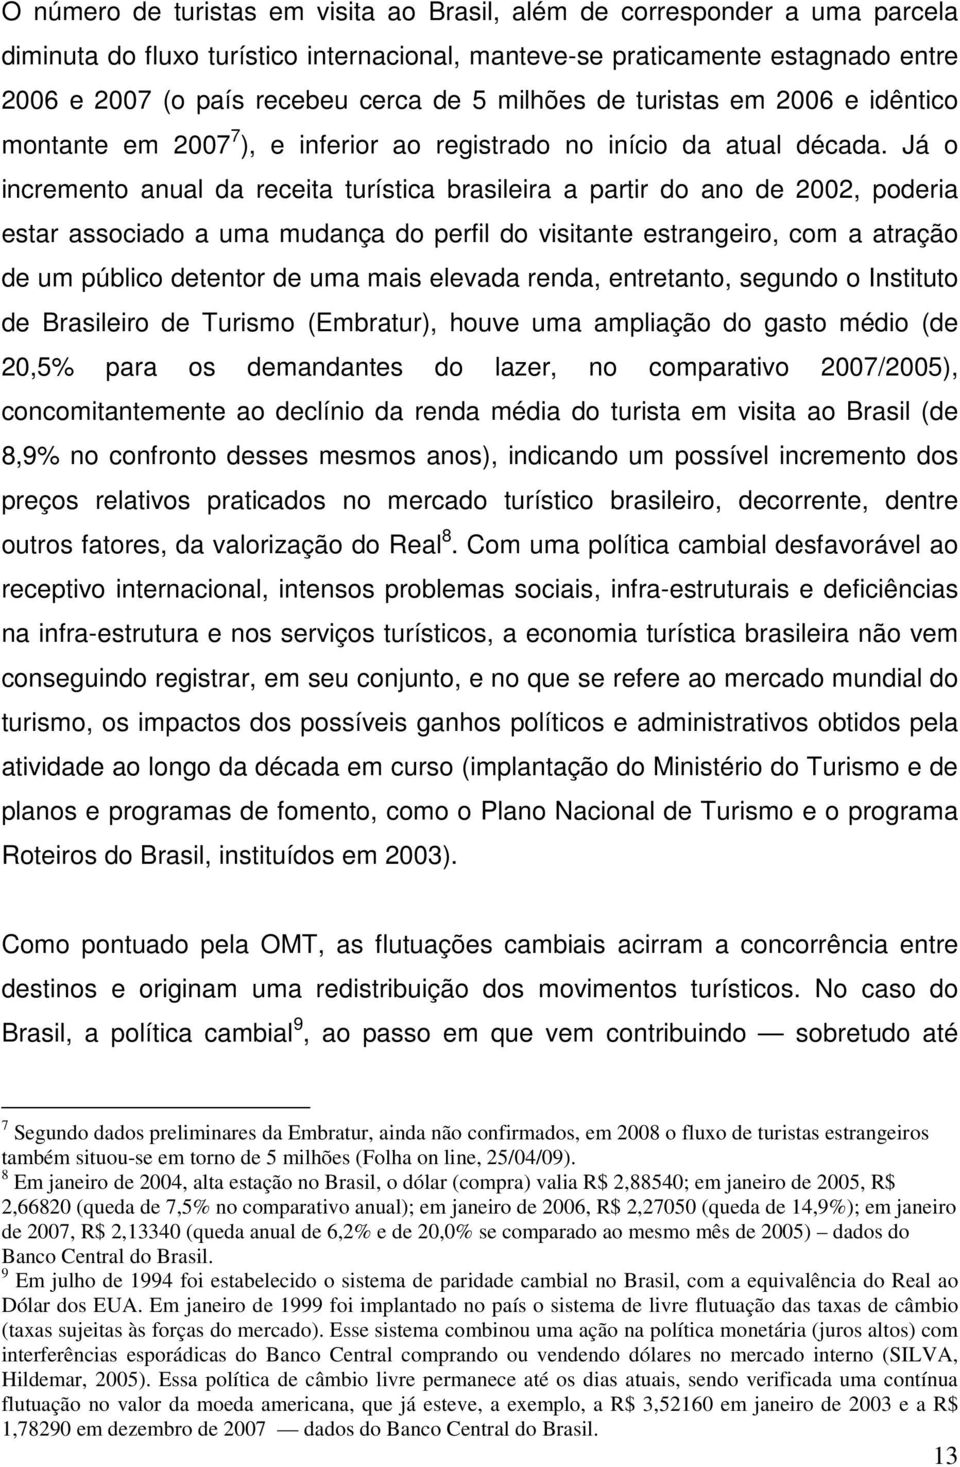 Já o incremento anual da receita turística brasileira a partir do ano de 2002, poderia estar associado a uma mudança do perfil do visitante estrangeiro, com a atração de um público detentor de uma